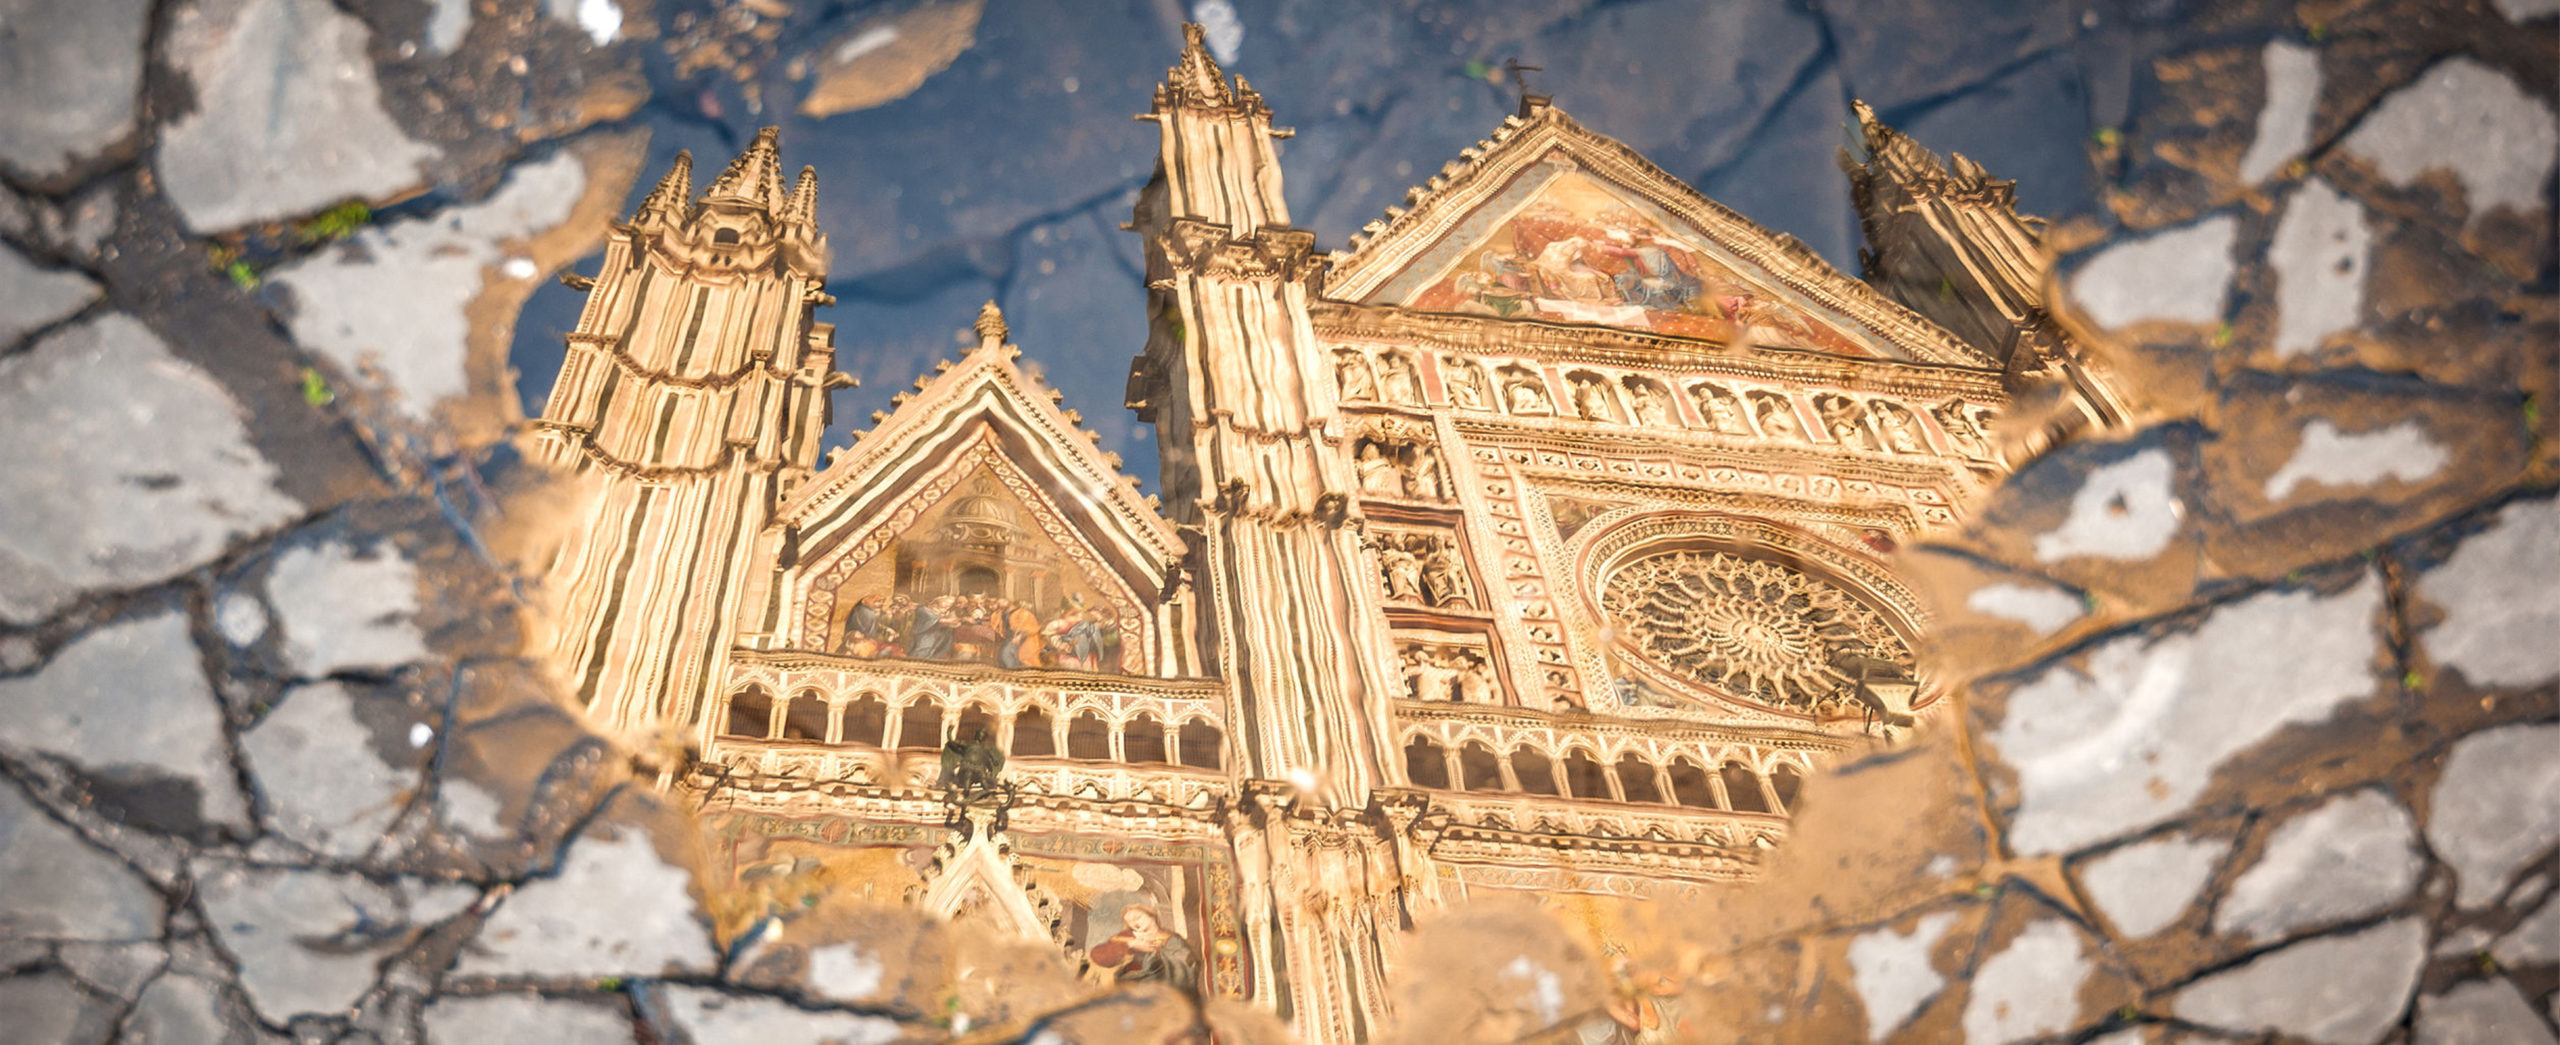 Orvieto - il riflesso del Duomo